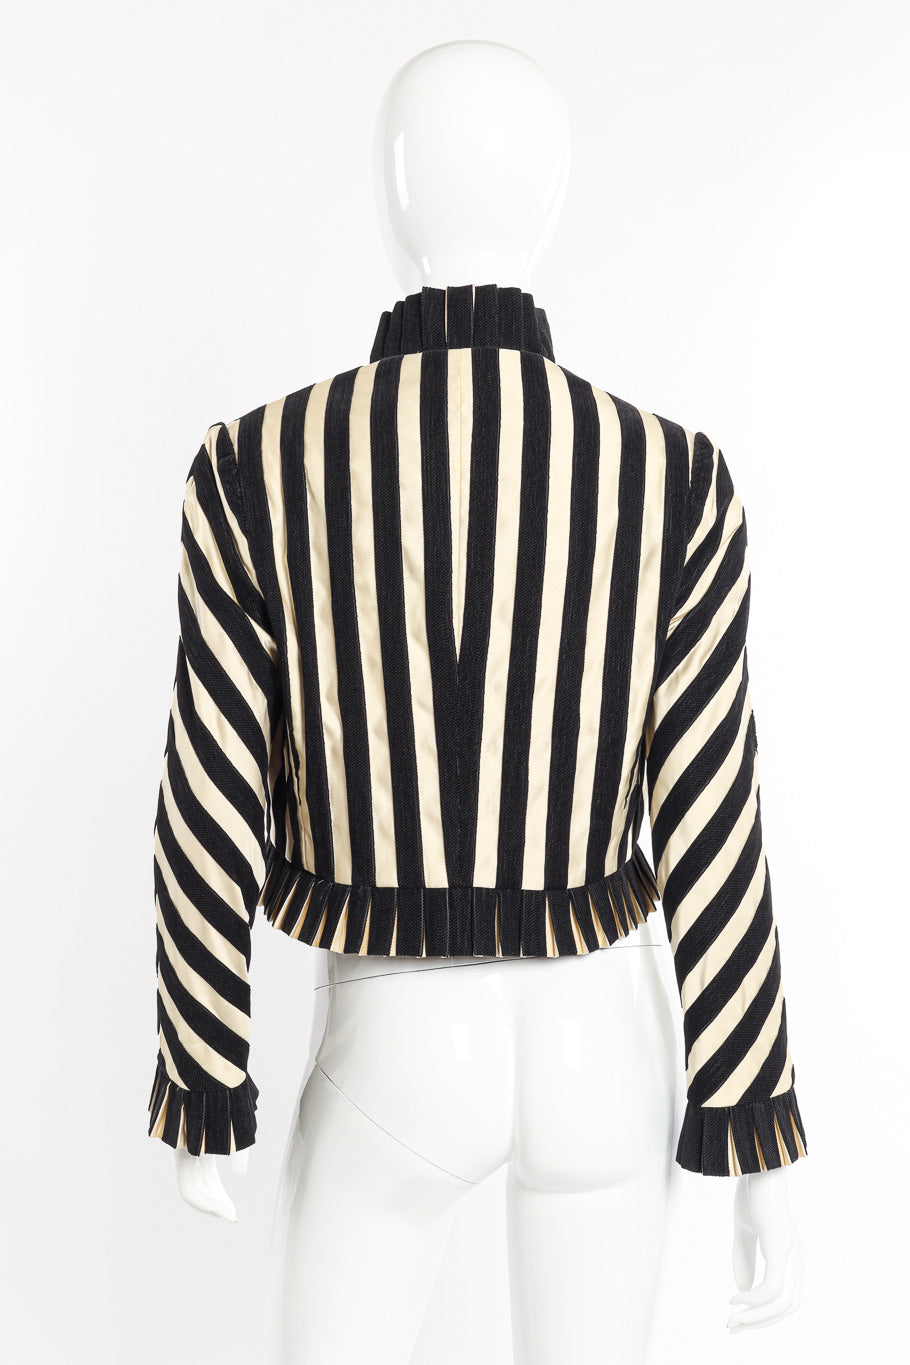 Vintage Bill Blass Striped Bolero Jacket back on mannequin @recessla